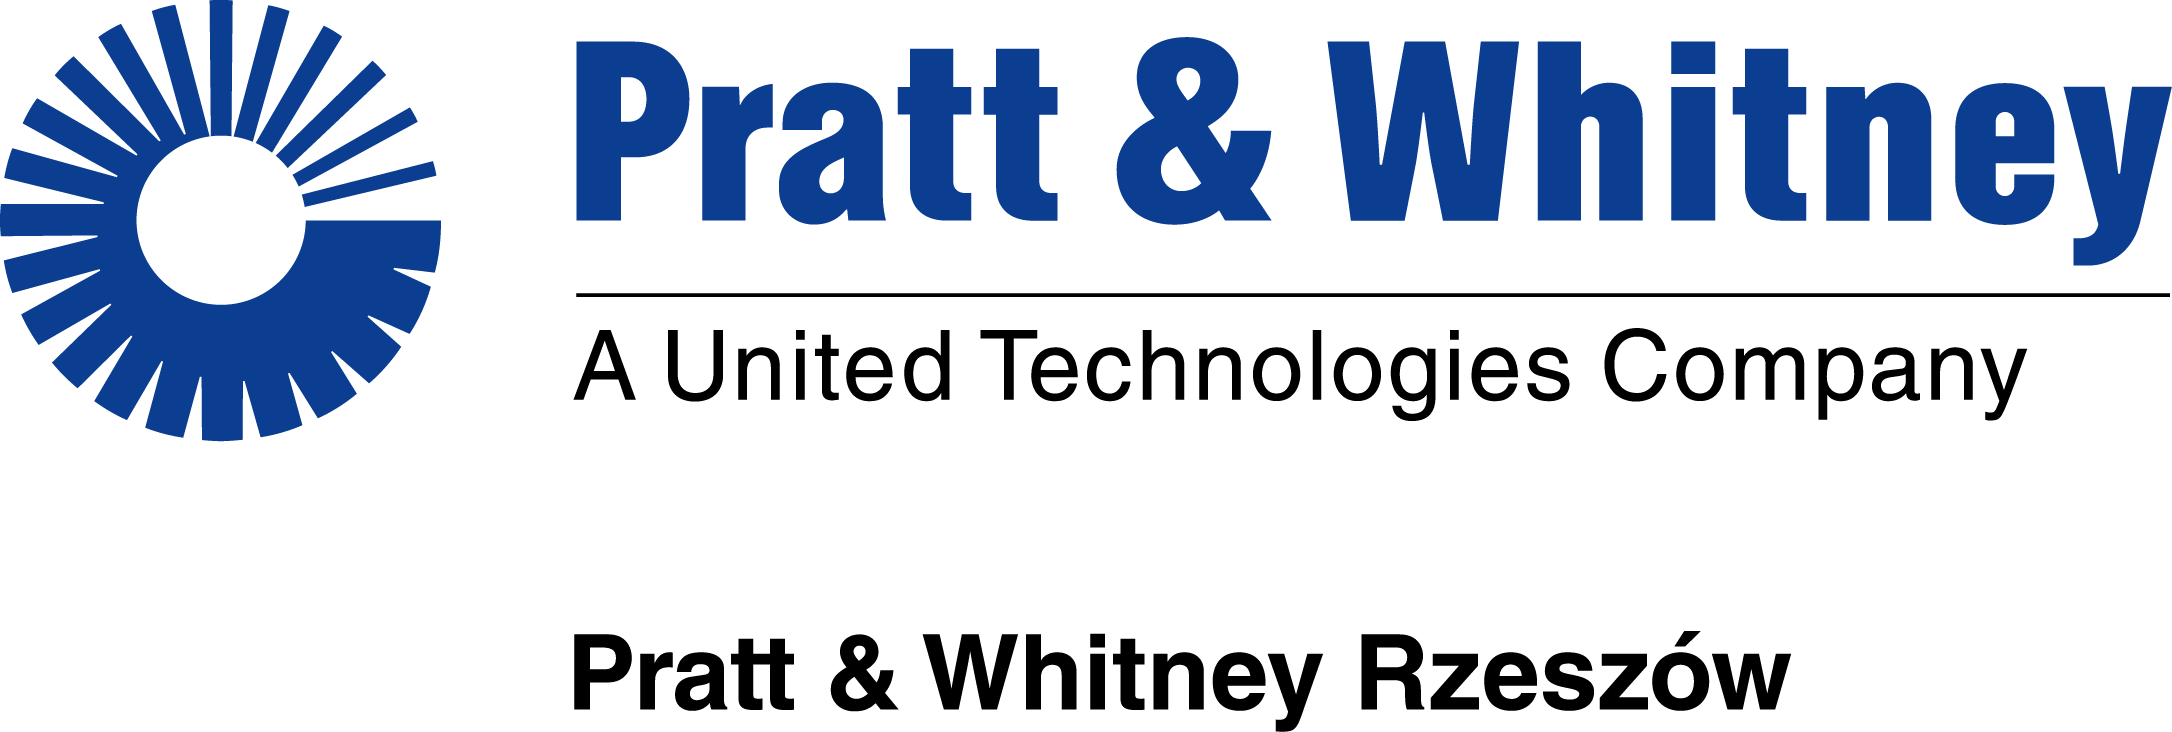 Pratt & Whitney Rzeszów